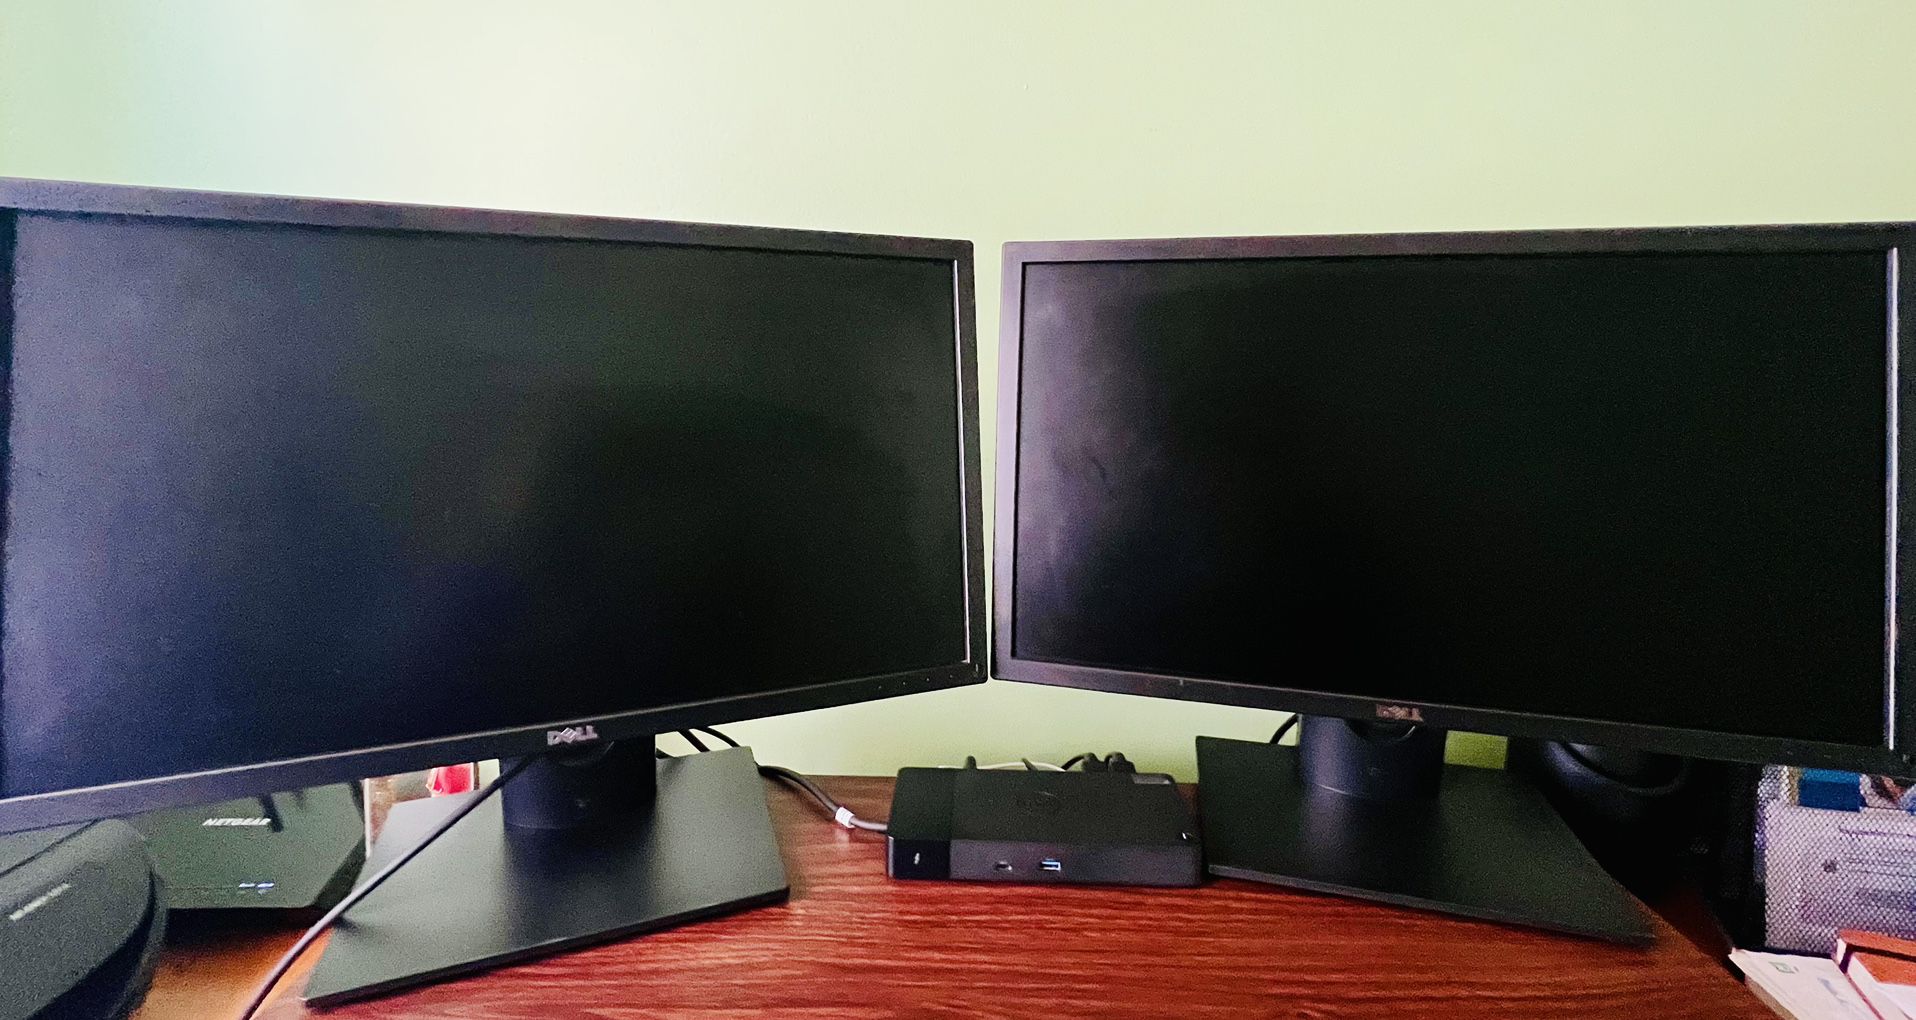 Dell 24” Monitors (Total 2 Pcs)